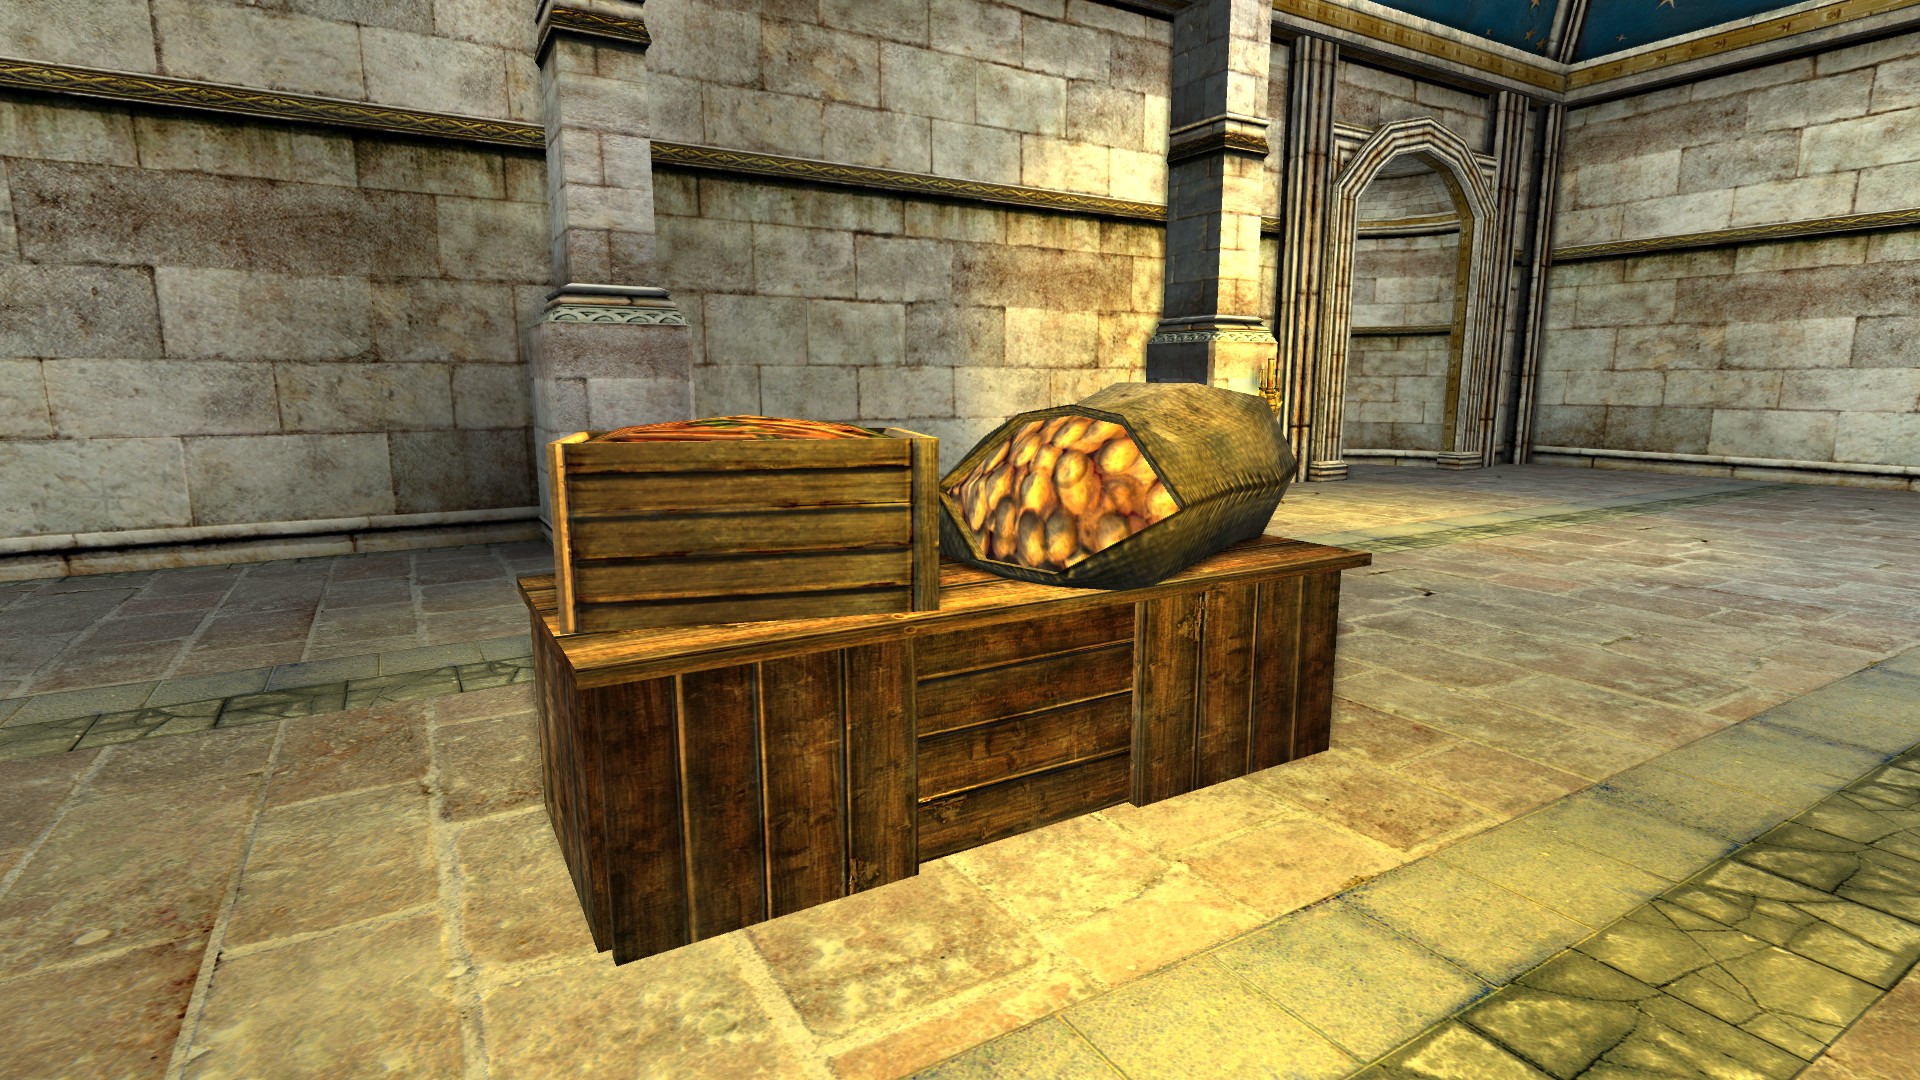 Table de marché chargée de pommes de terre